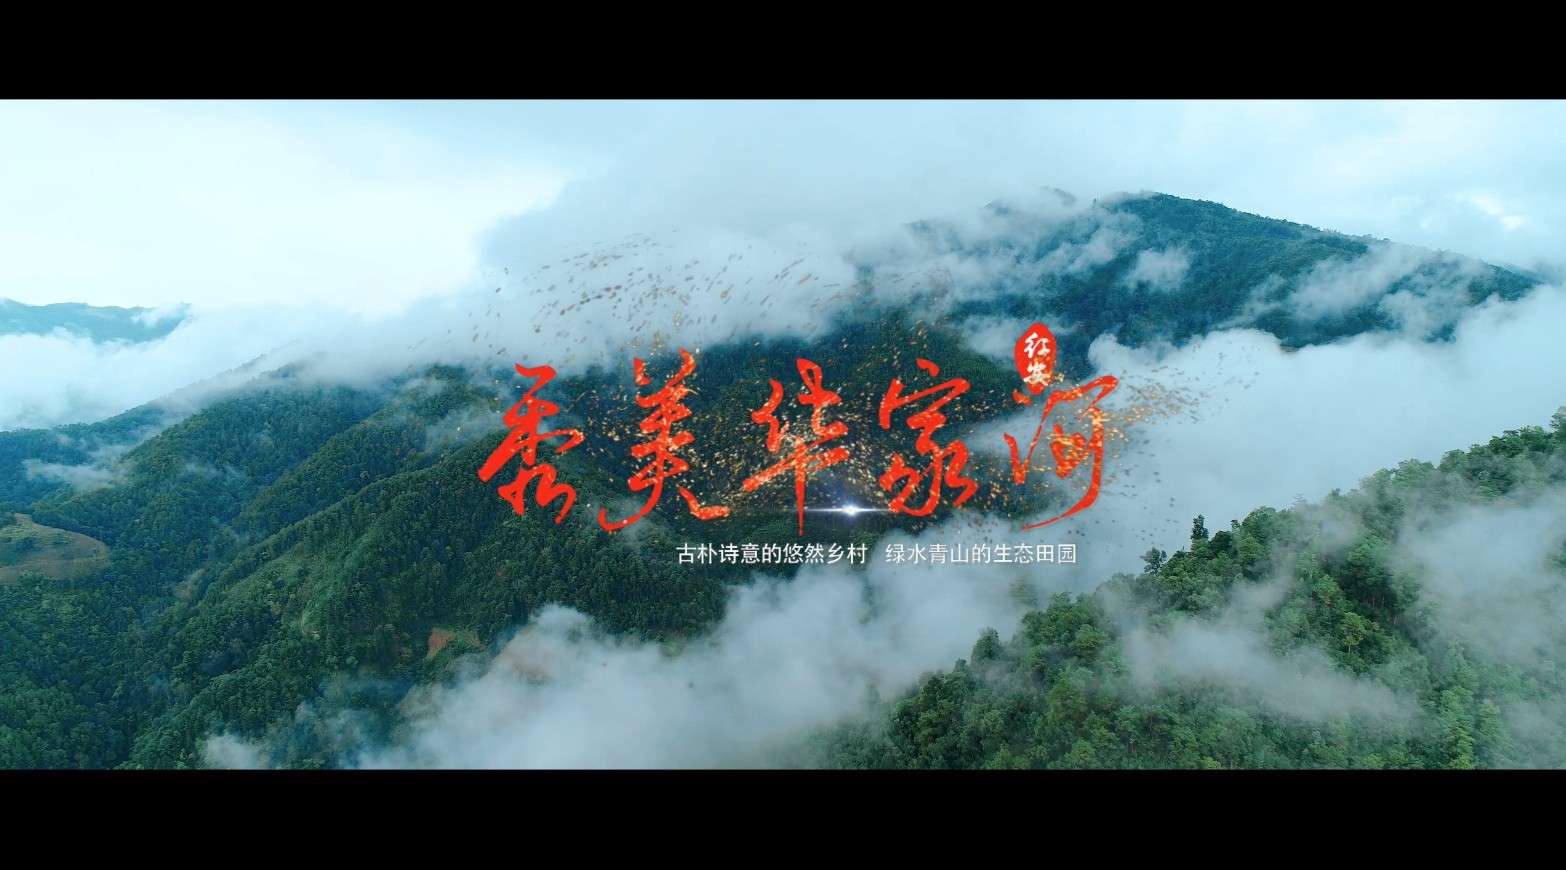 中国第一将军县——红安华家河镇 形象宣传片 4K